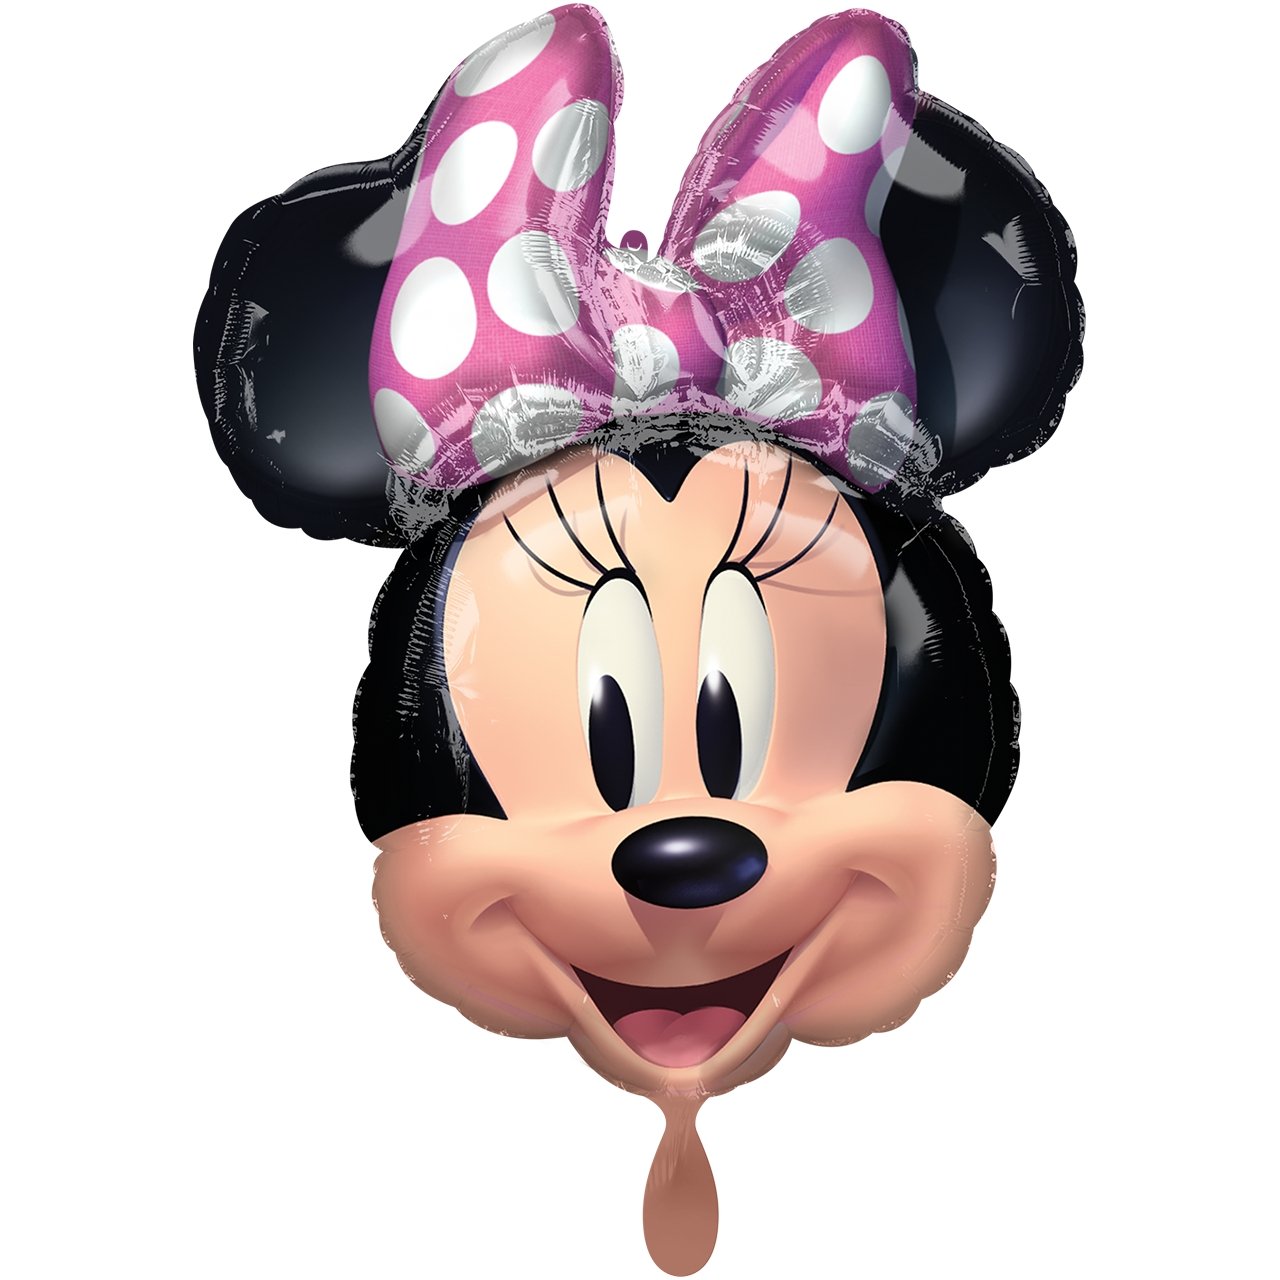 Partykarton "Minnie Mouse" 29-teilig - Party im Karton